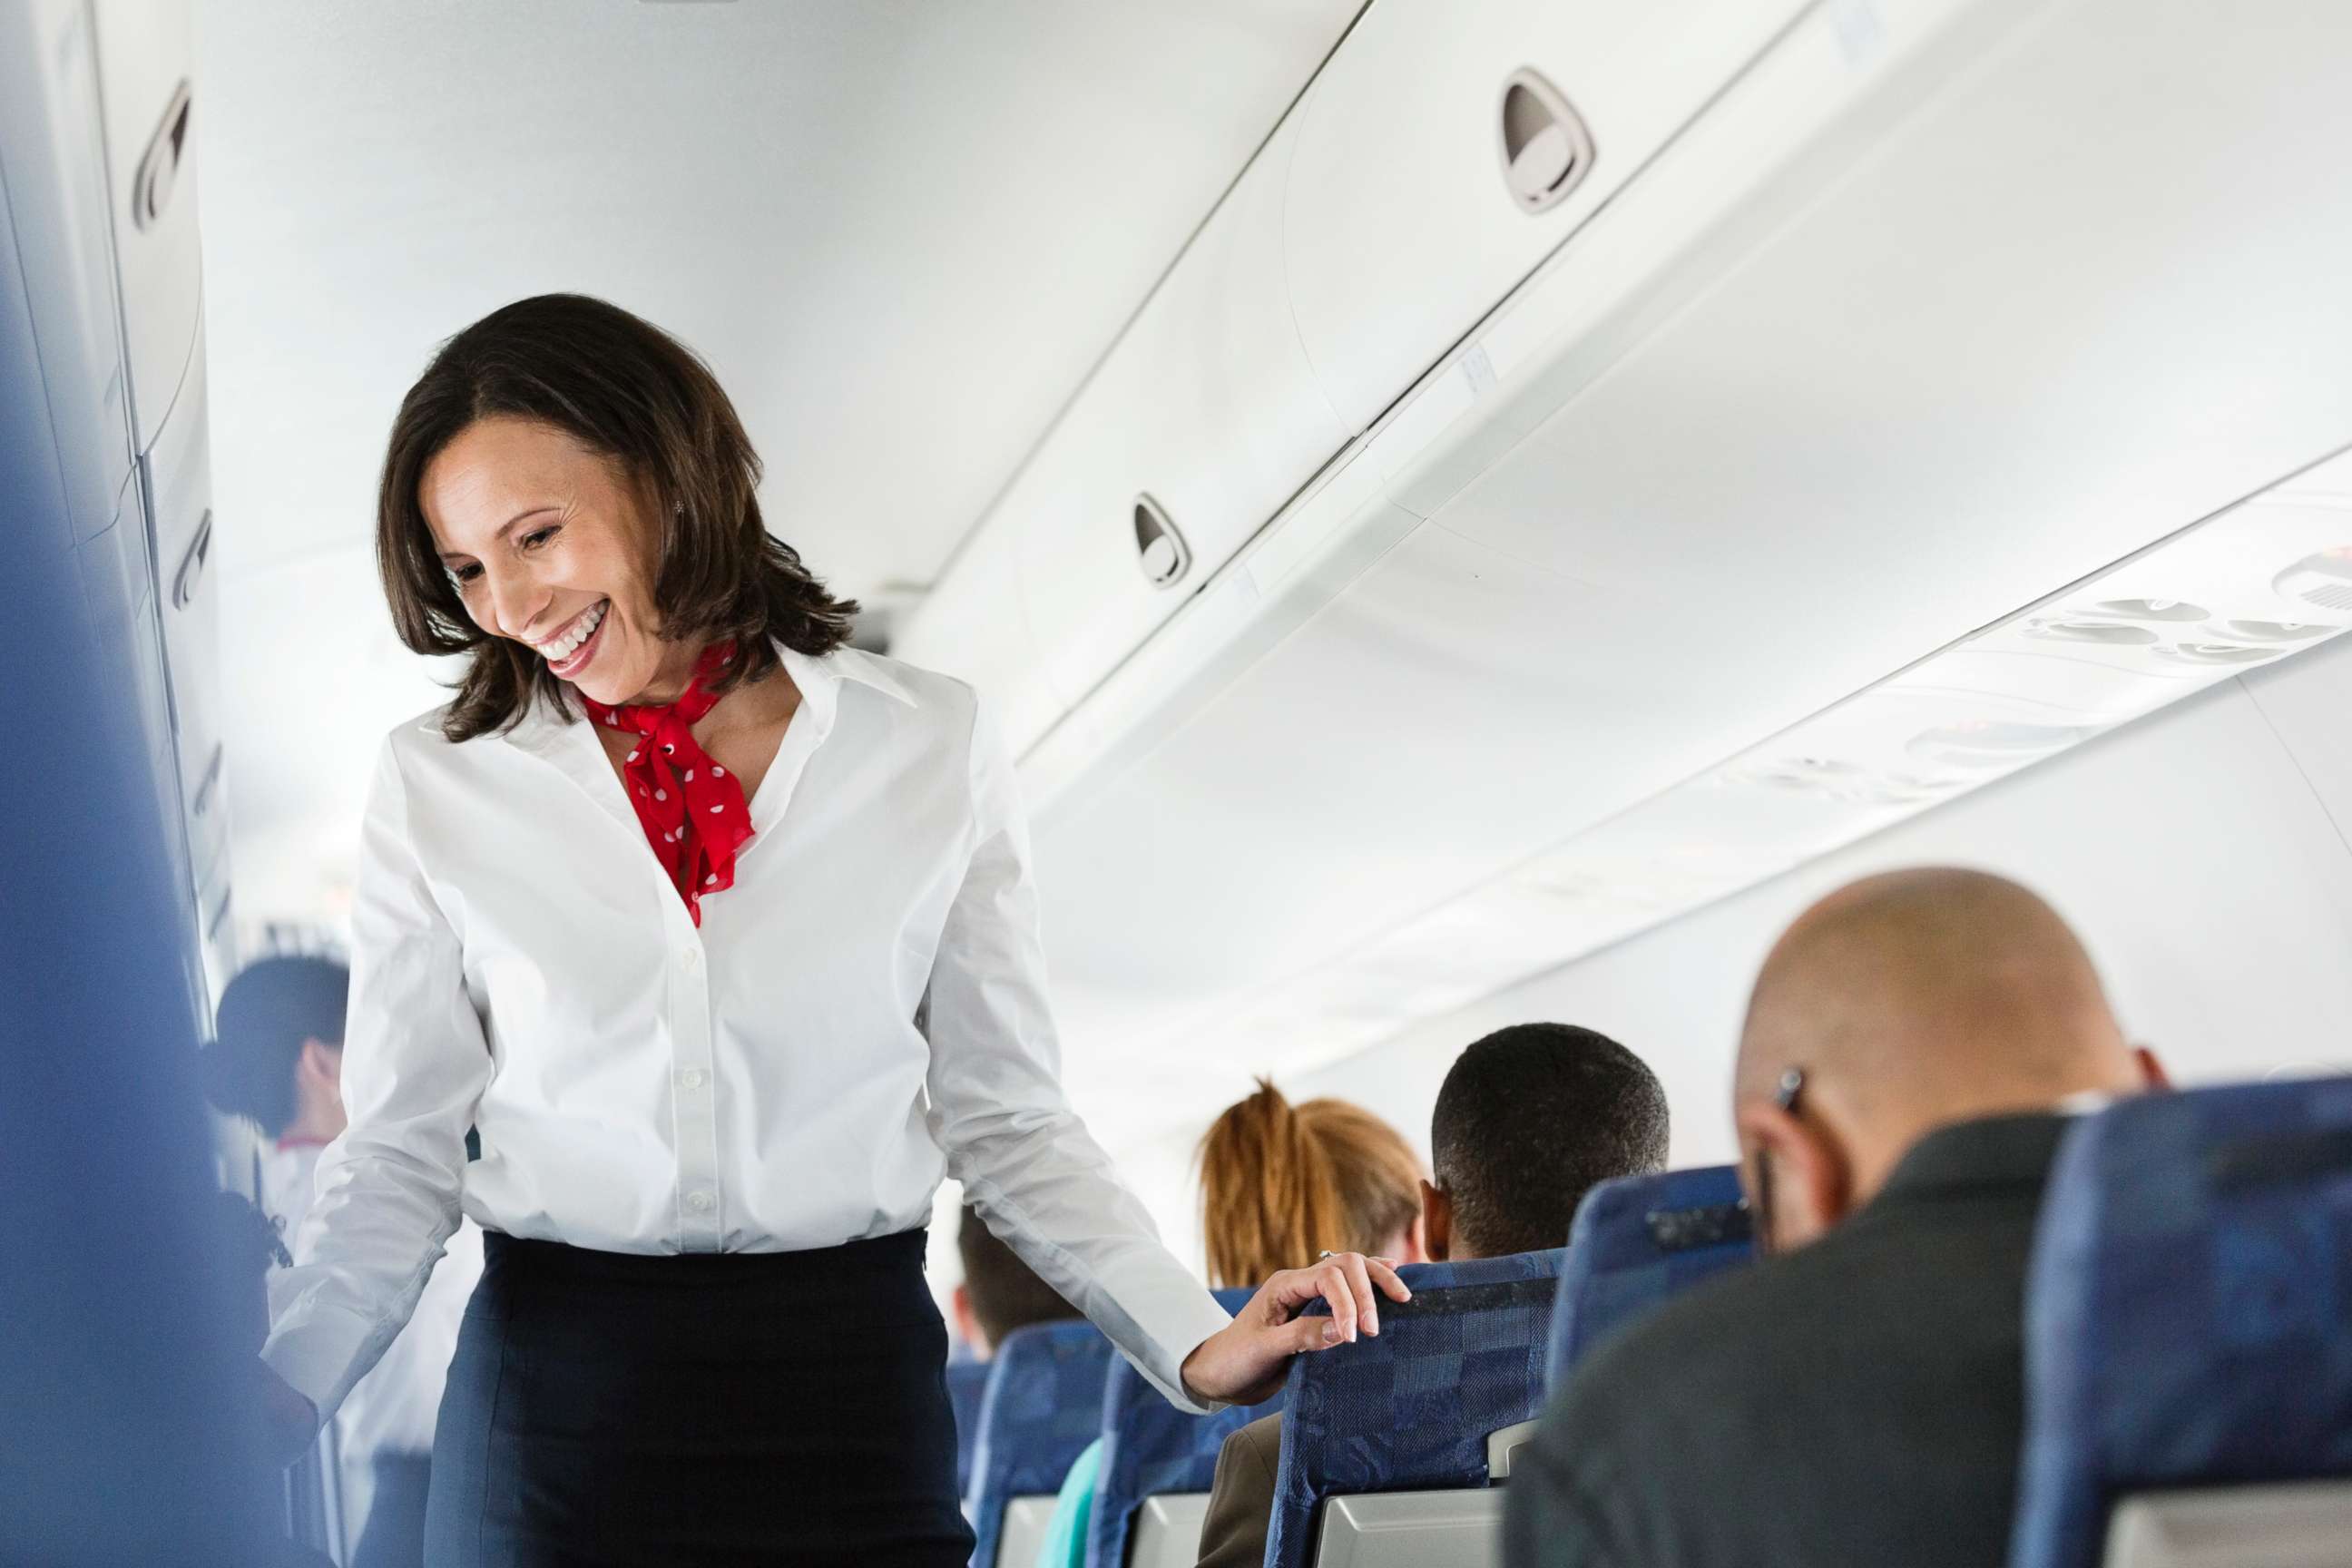 PHOTO: A flight attendant helps a passenger.